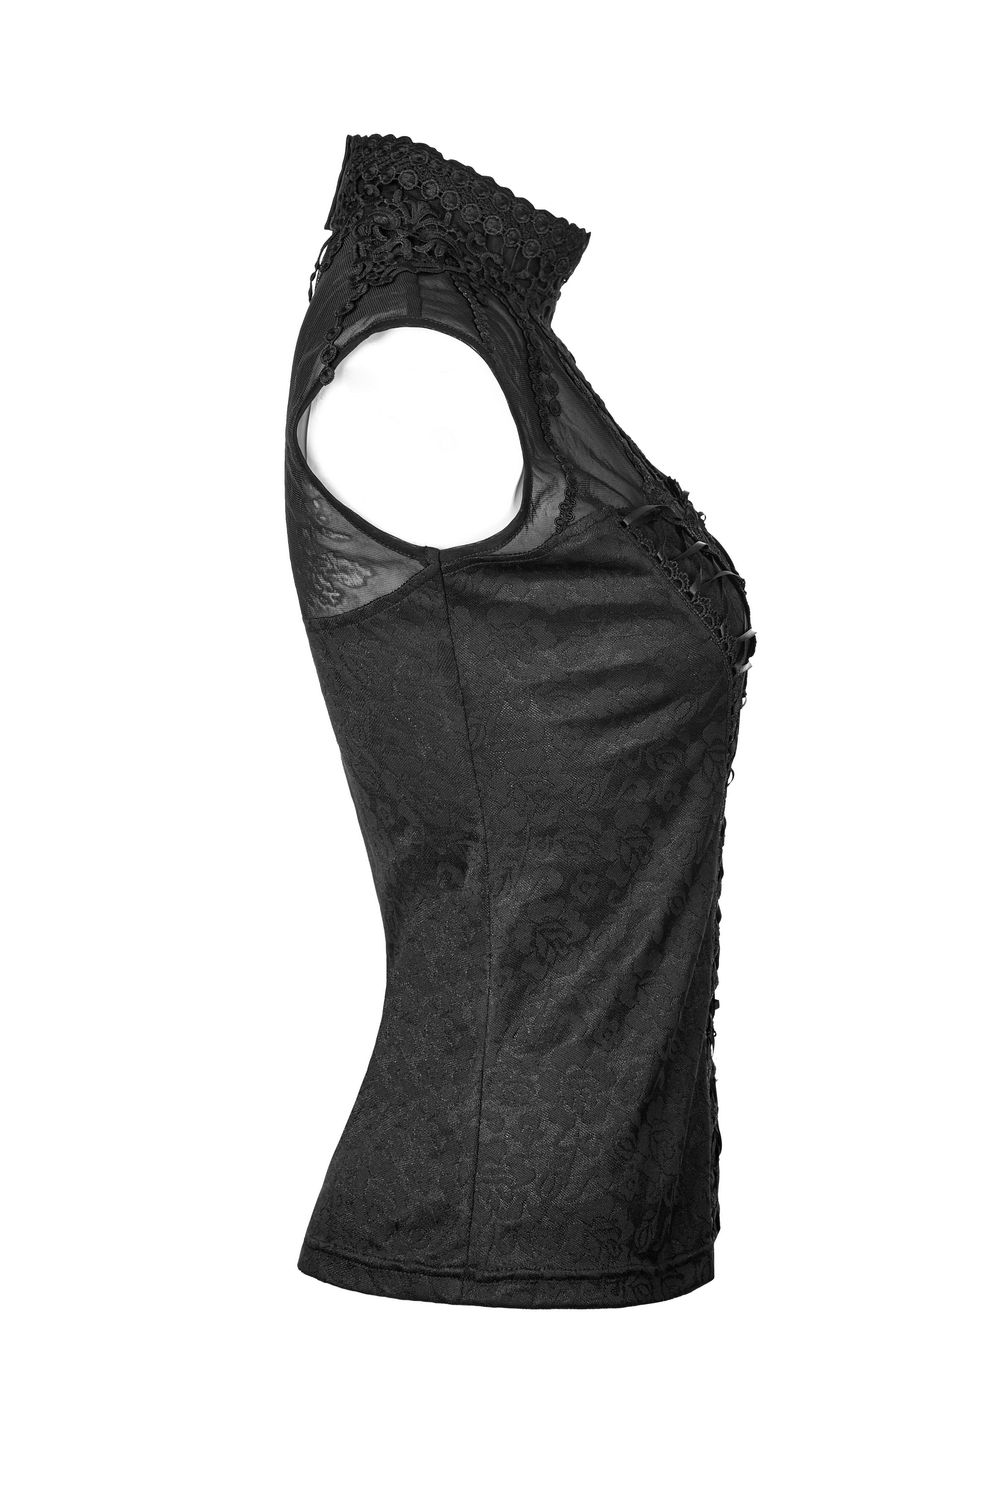 Elegant Gothic-Style Black Fringed Lace Tank Top